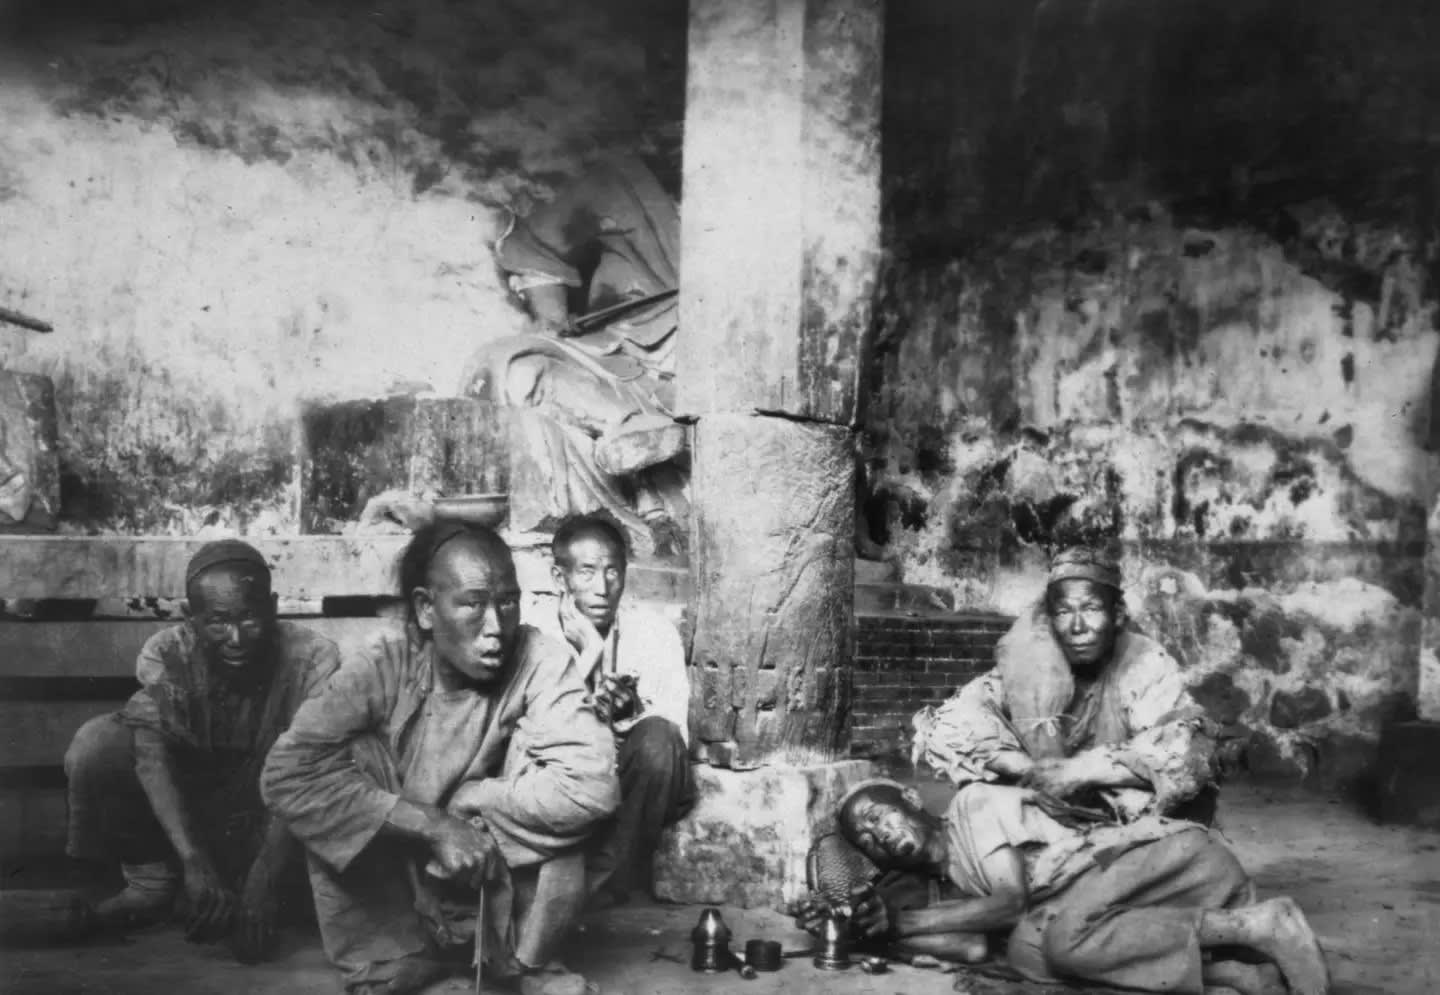 Opium addicts in Beijing, 1908